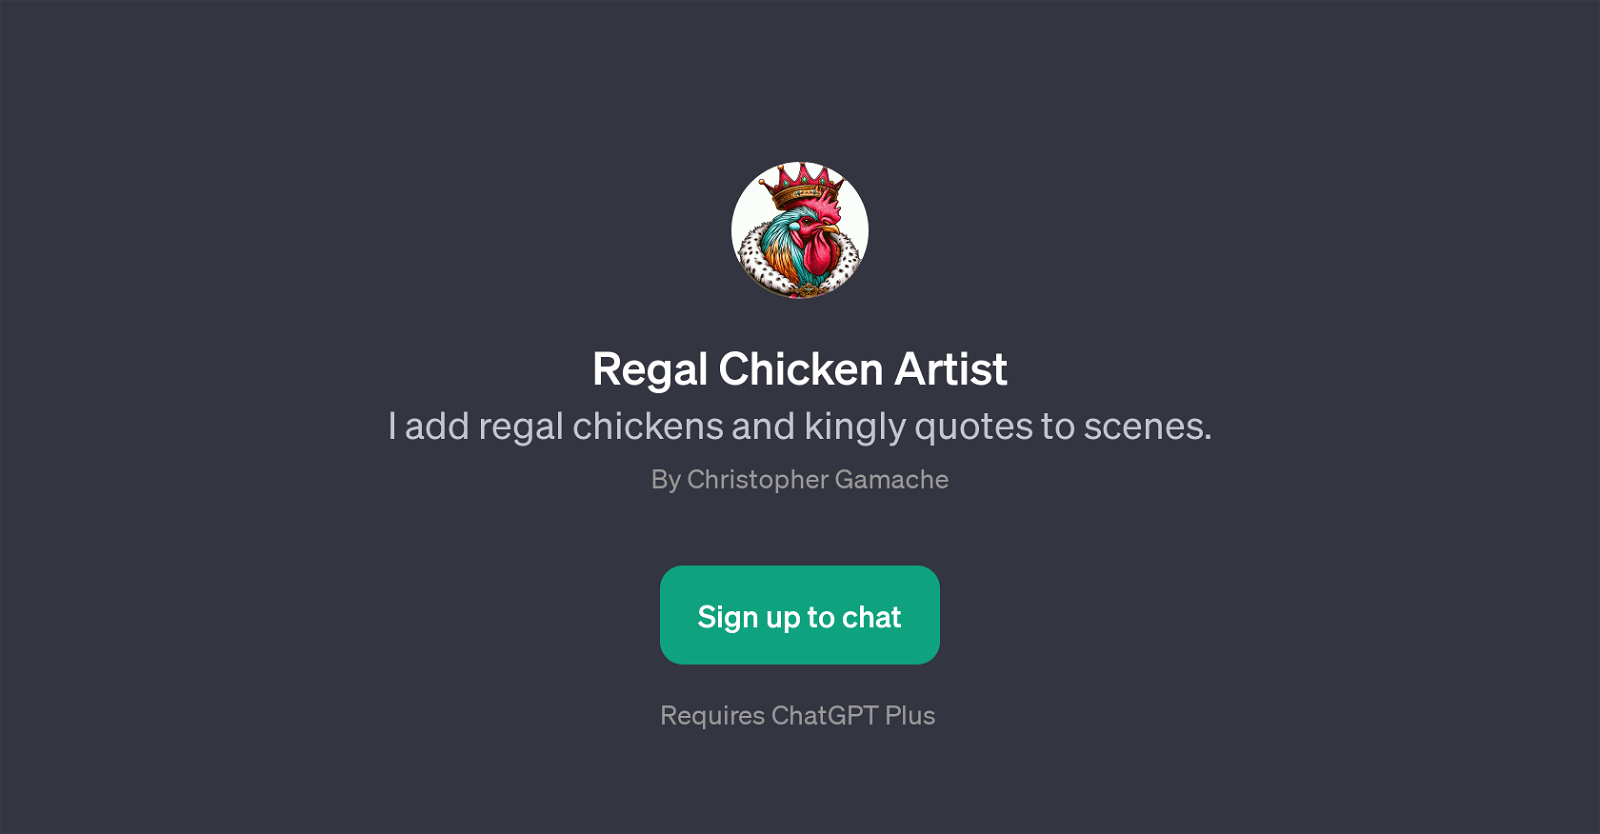 Regal Chicken Artist website